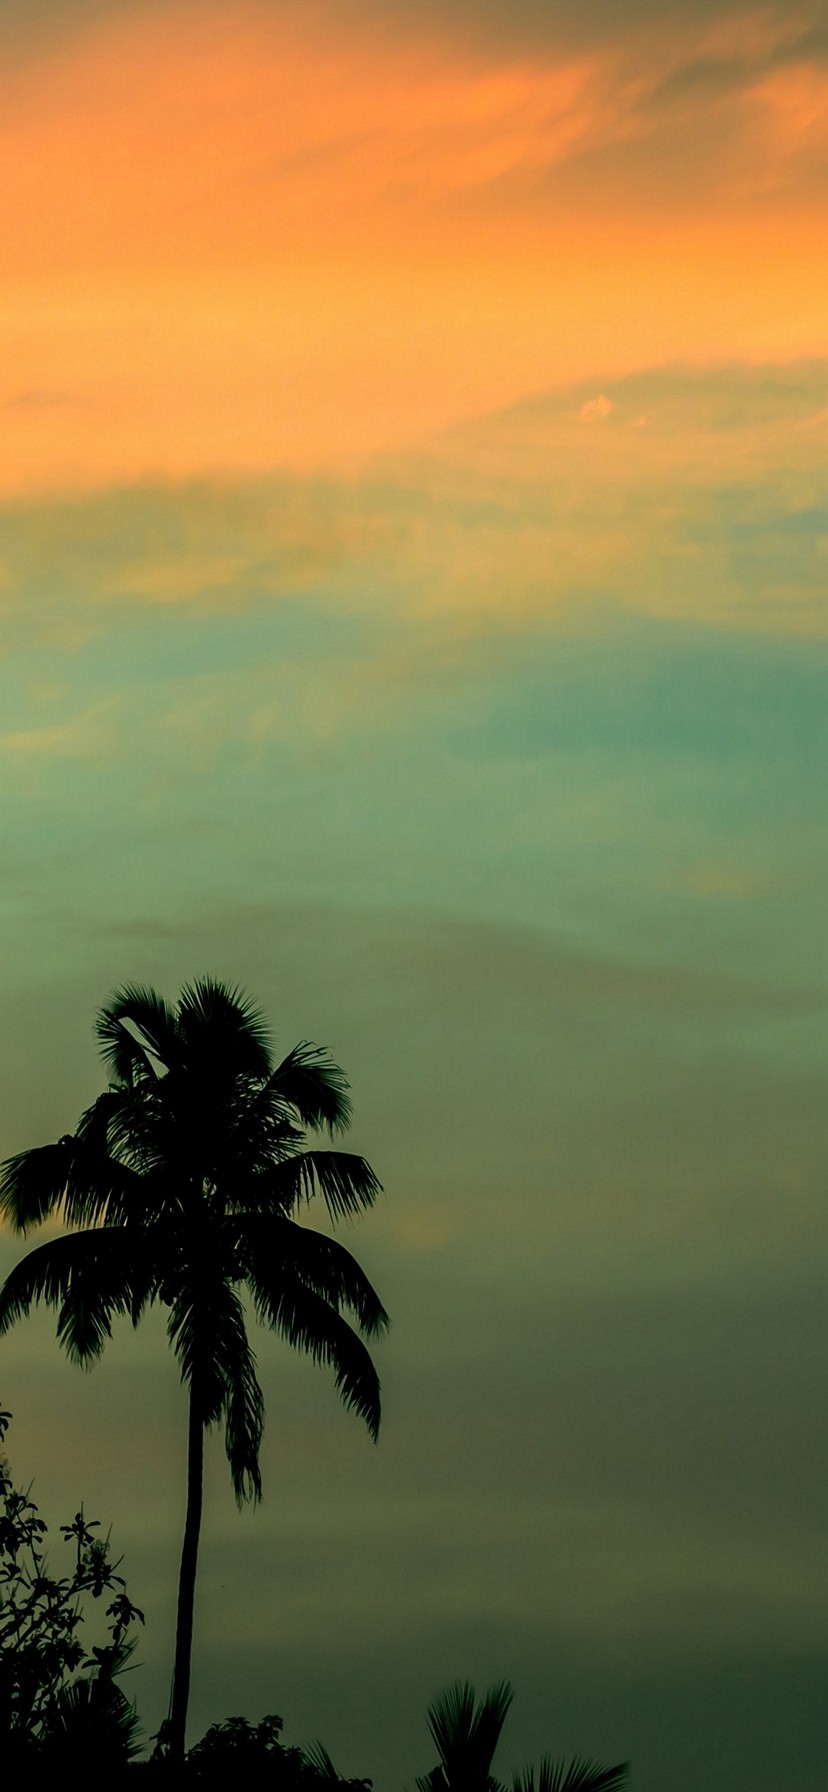 immagine di sfondo,cielo,natura,albero,palma,calma